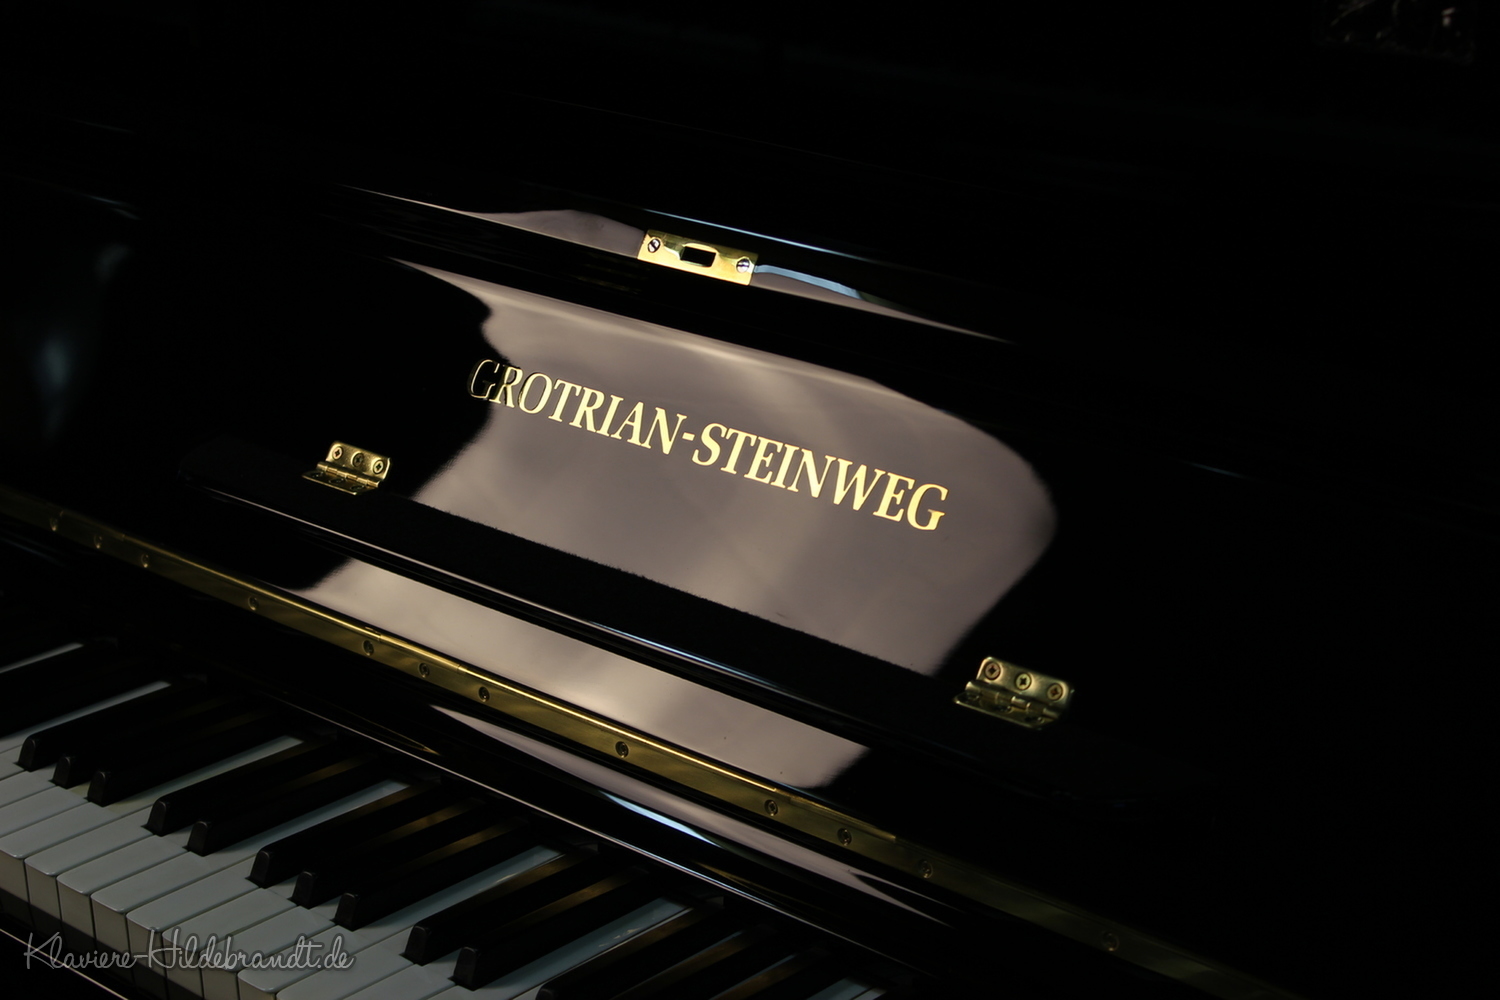 Grotrian-Steinweg, Mod. II Klavier